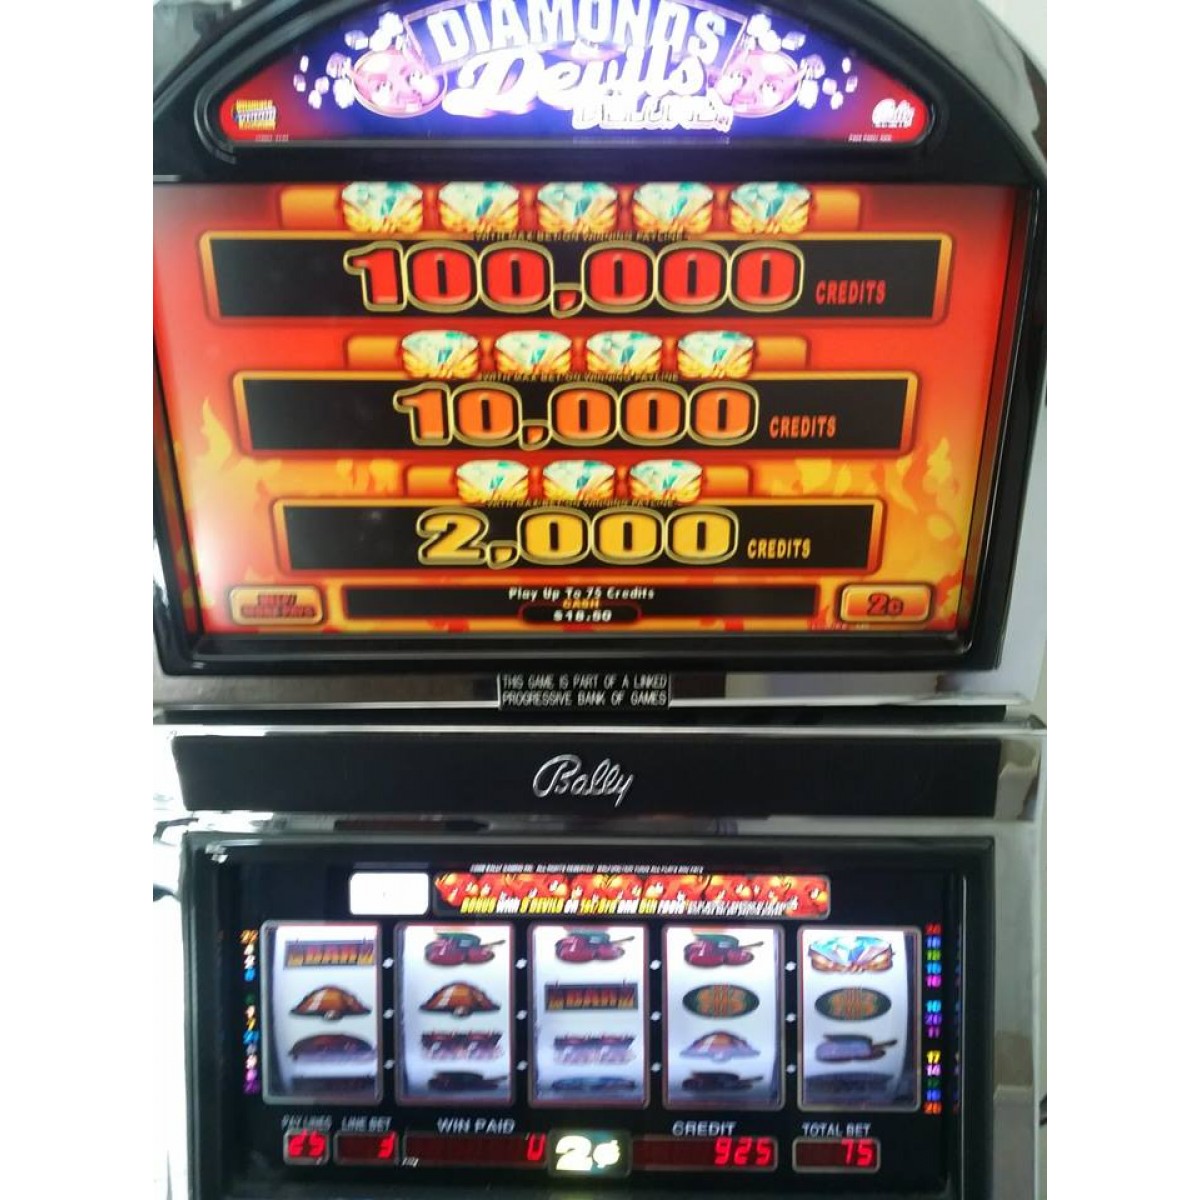 Super diamond deluxe slot machine